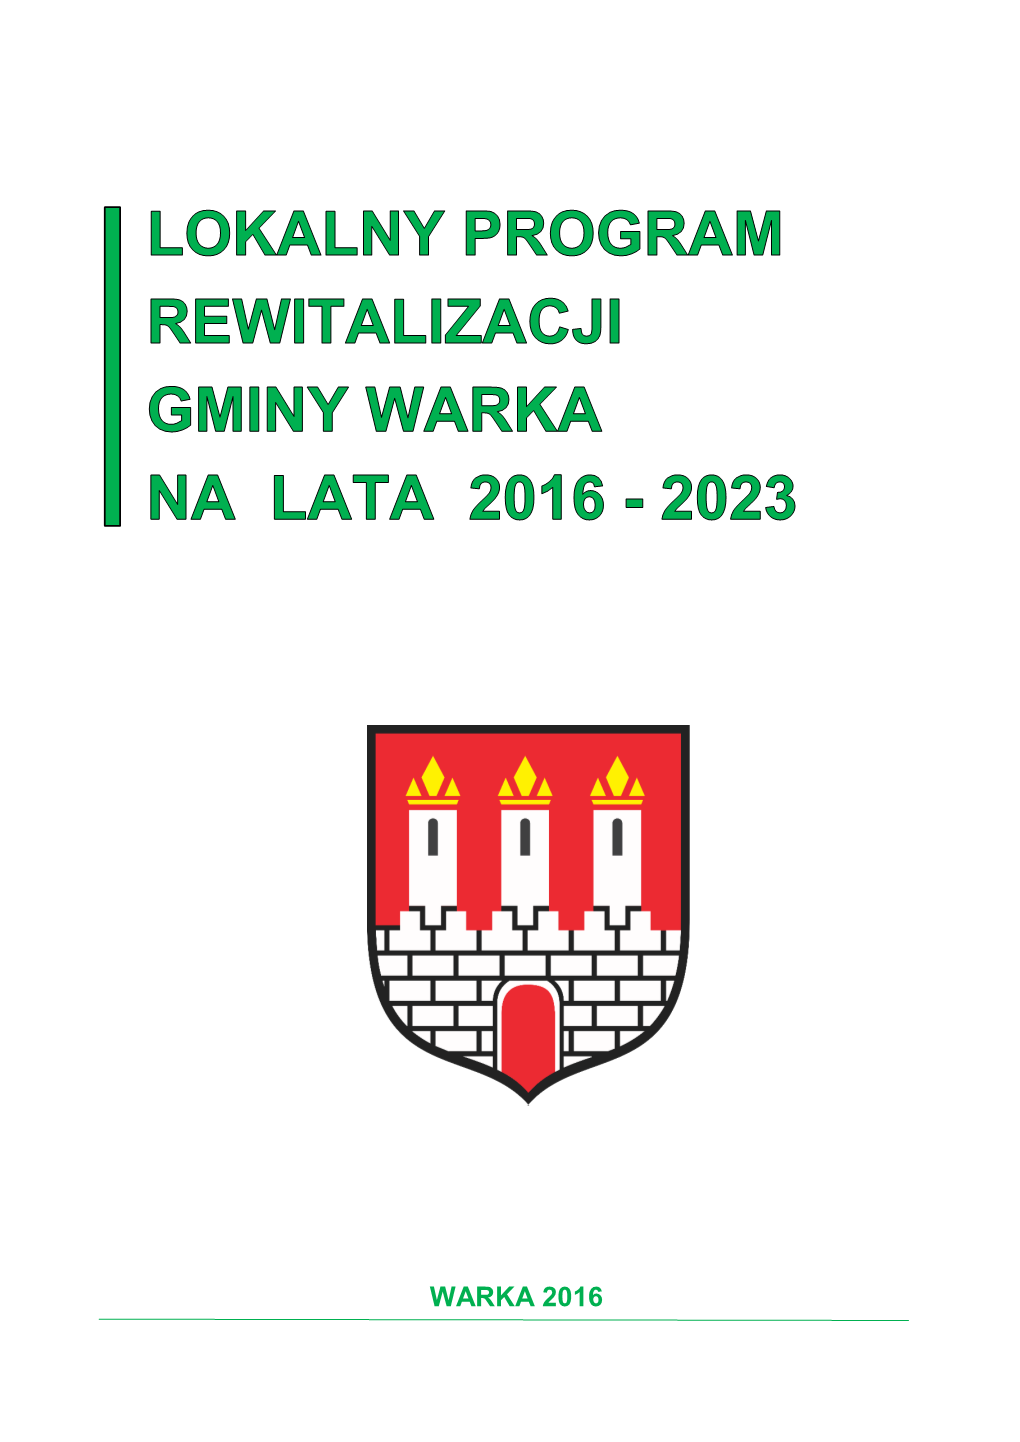 Lokalny Program Rewitalizacji Dla Gminy Warka Na Lata 2016-2023